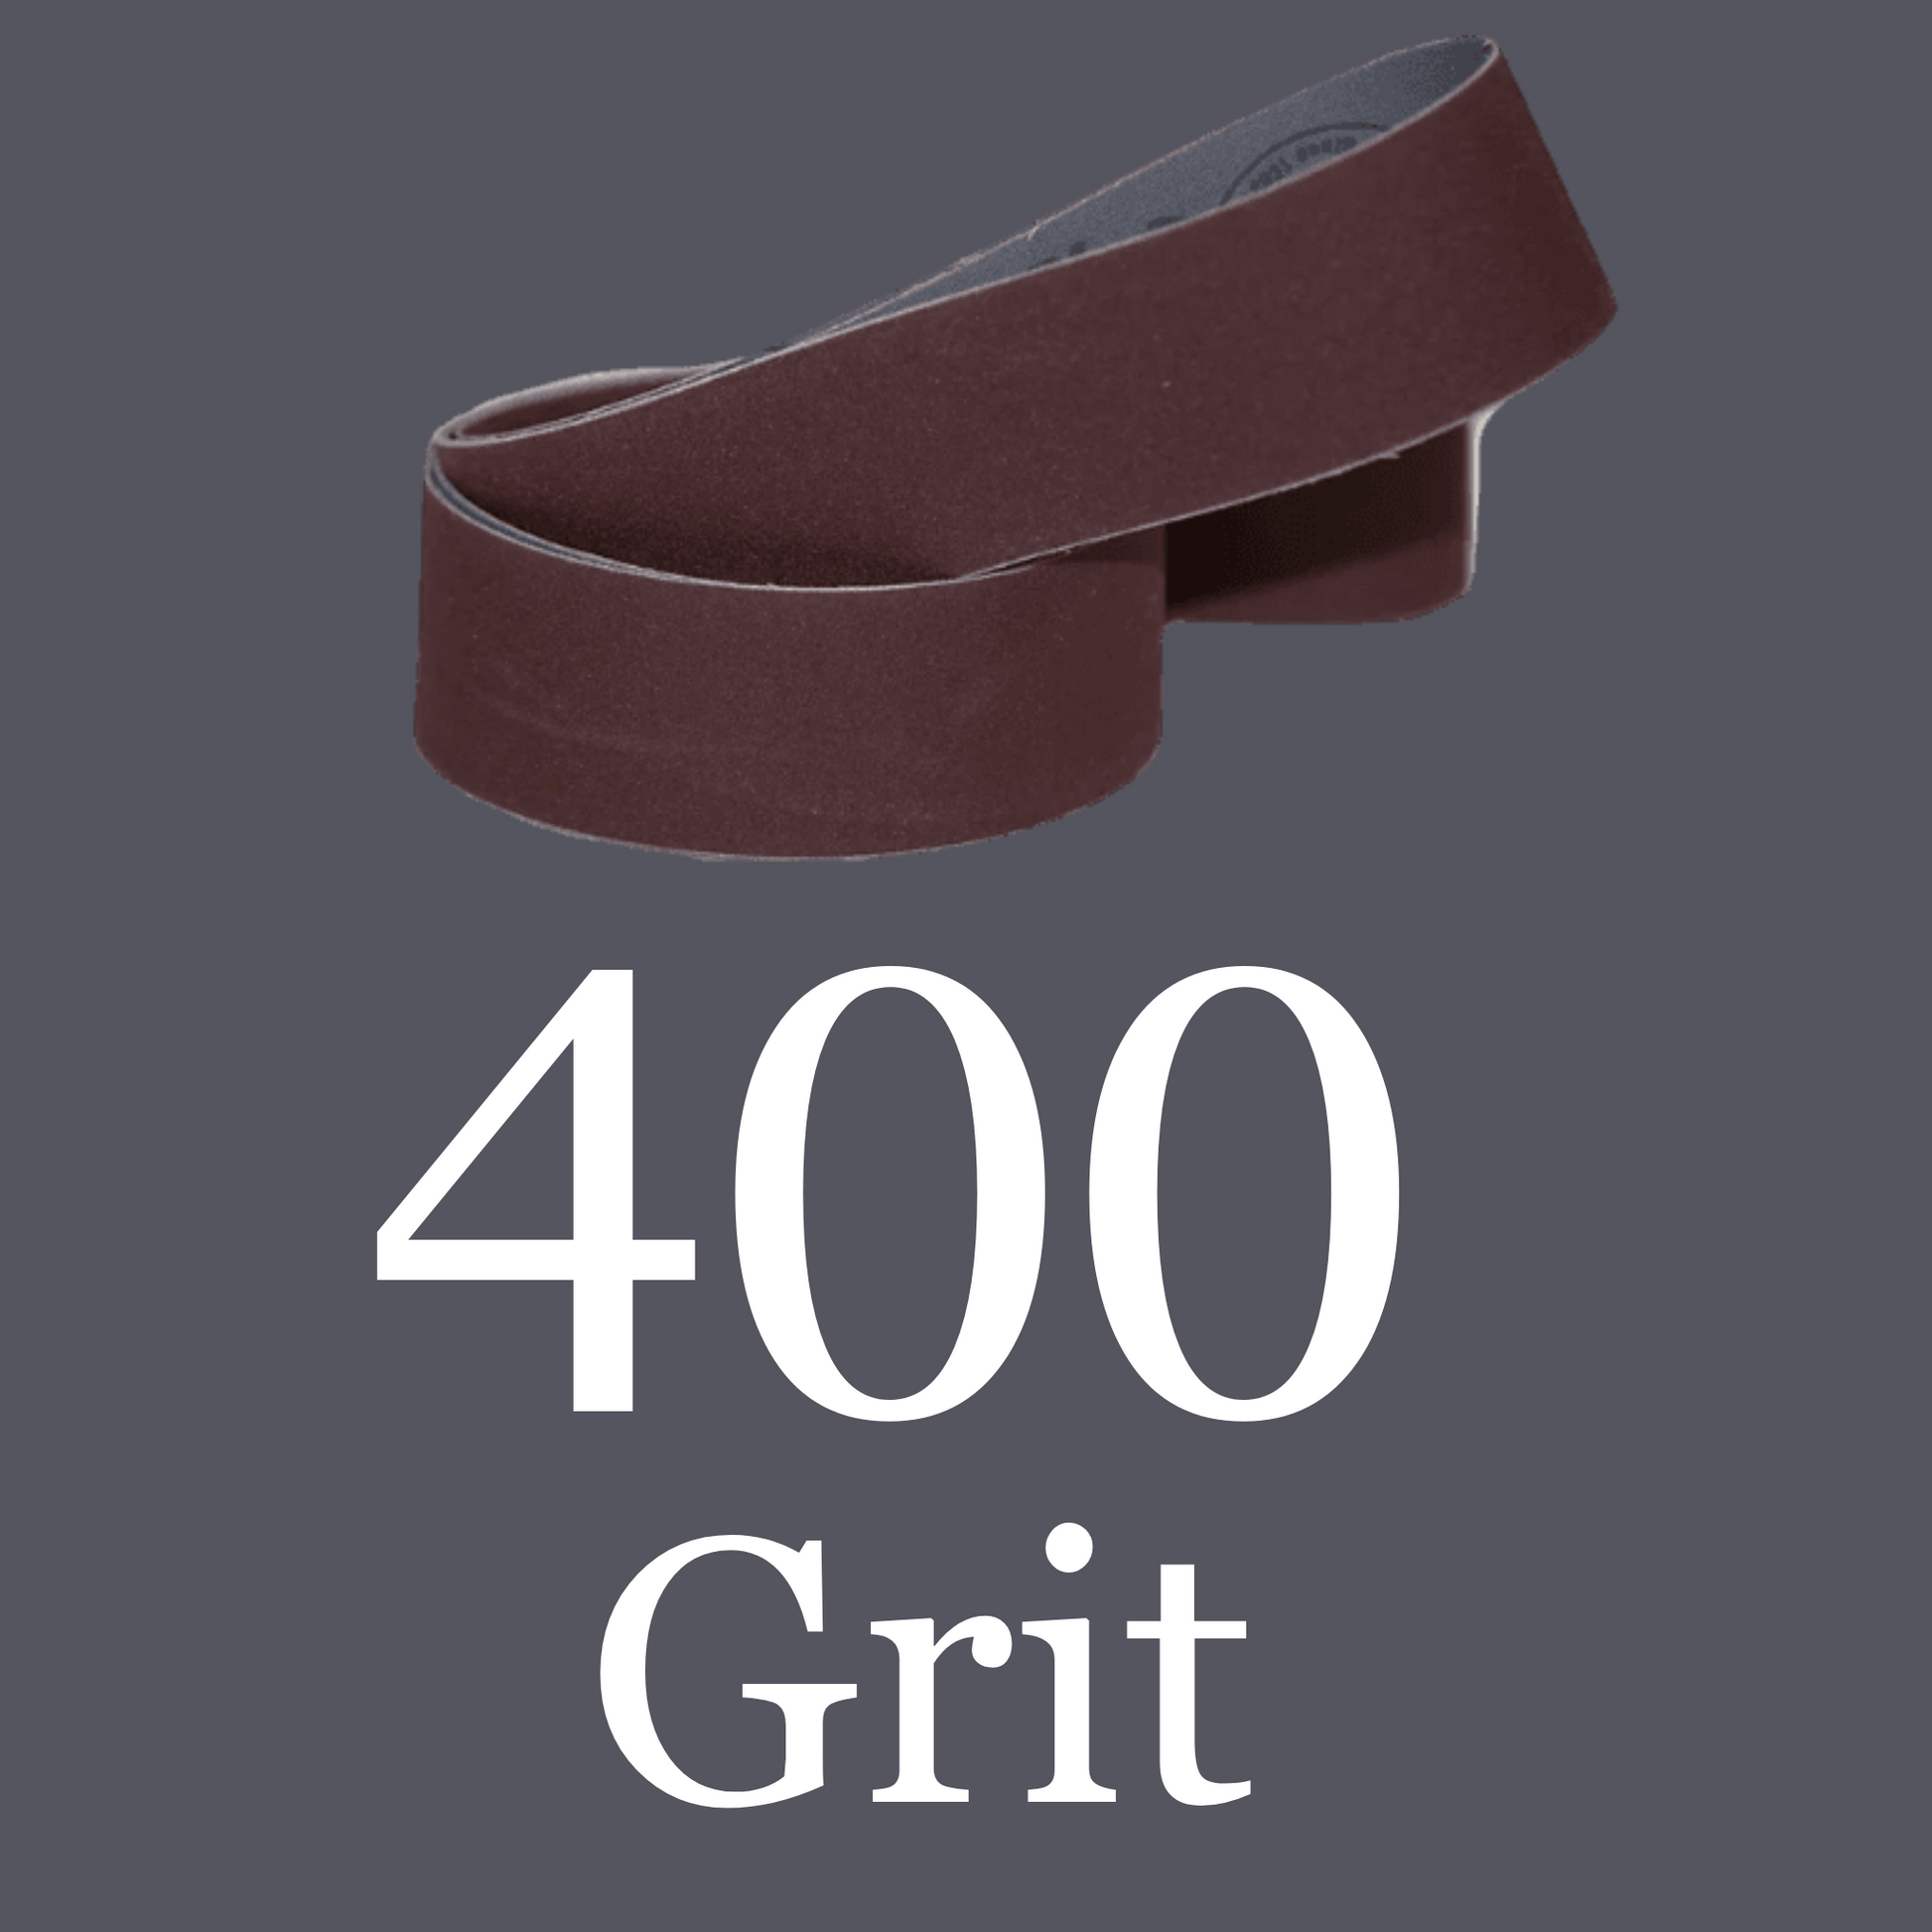 1” x 30” Aluminum Oxide Belt 400 Grit